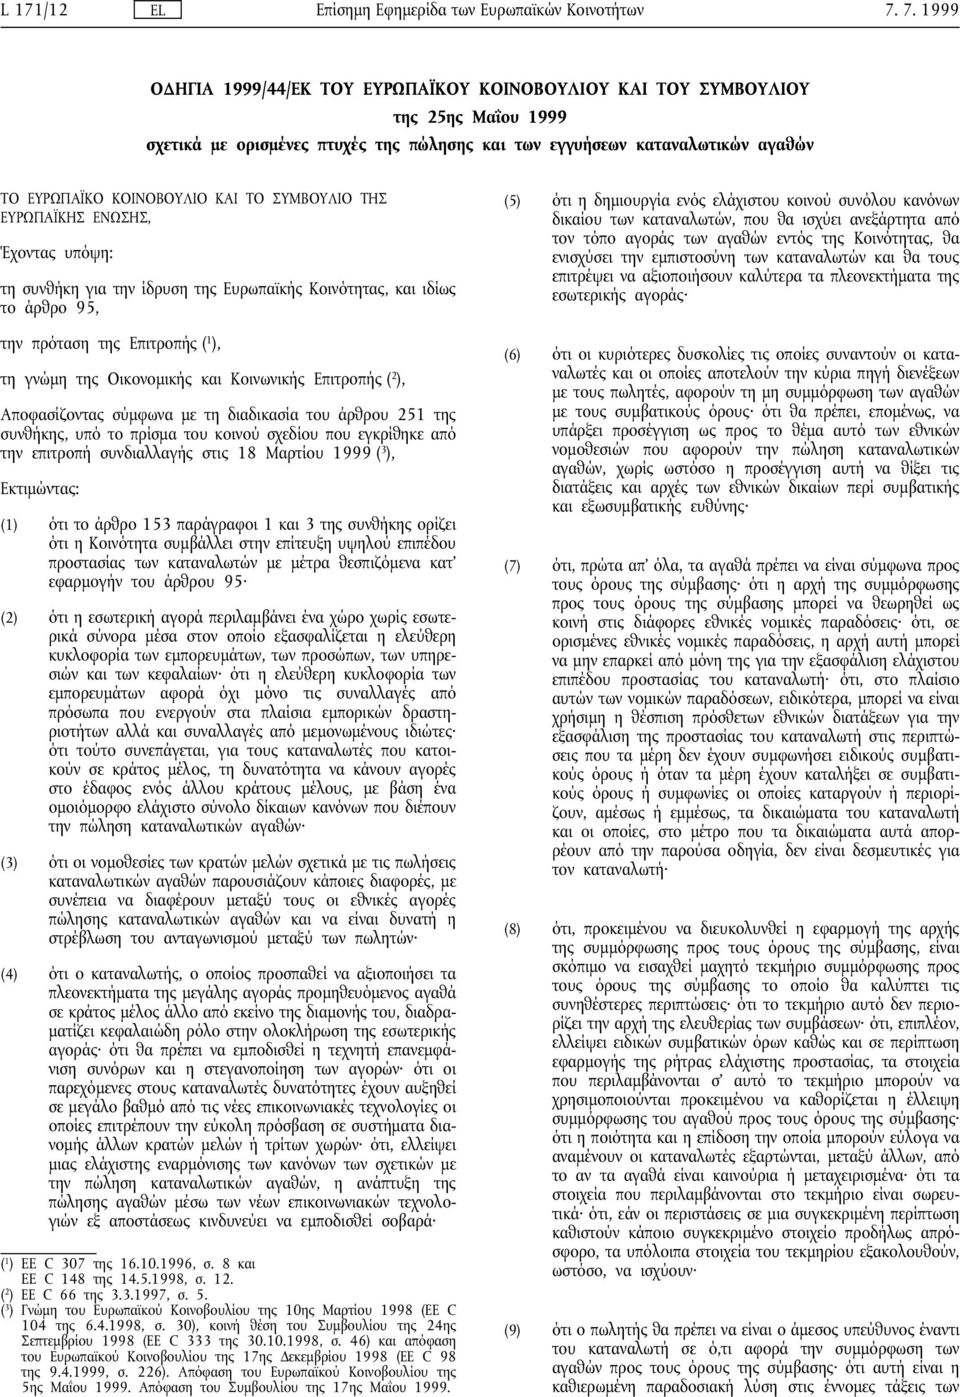 Κοινωνικής Επιτροπής ( 2 ), Αποφασίζοντας σύµφωνα µε τη διαδικασία του άρθρου 251 της συνθήκης, υπό το πρίσµα του κοινού σχεδίου που εγκρίθηκε από την επιτροπή συνδιαλλαγής στις 18 Μαρτίου 1999 ( 3